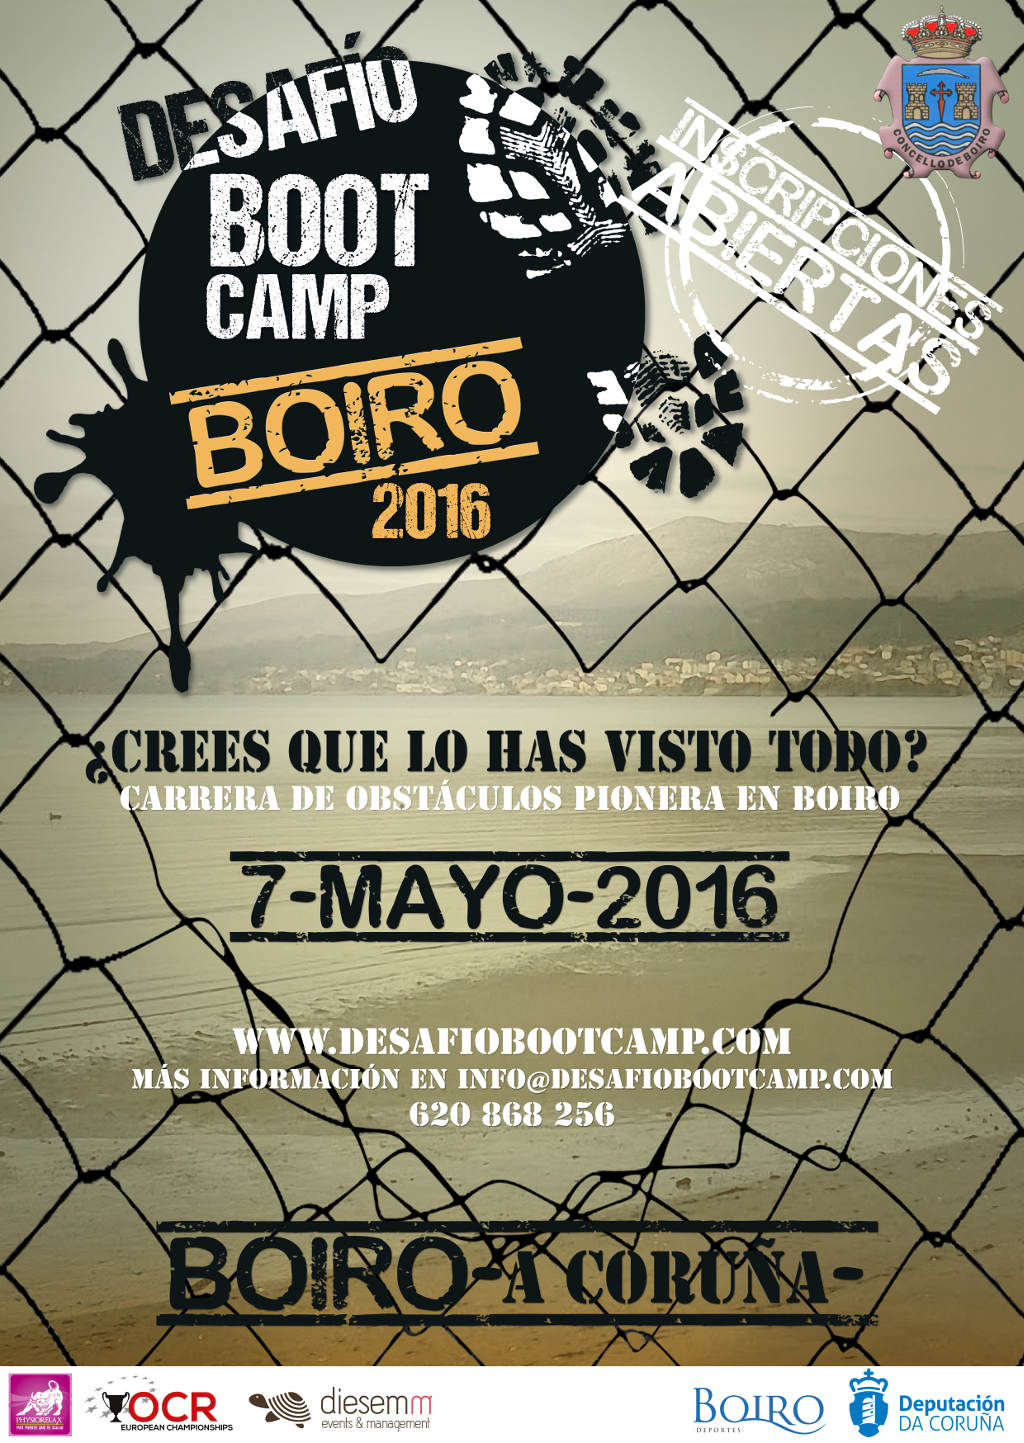  Desafío Boot Camp - Boiro 2016 